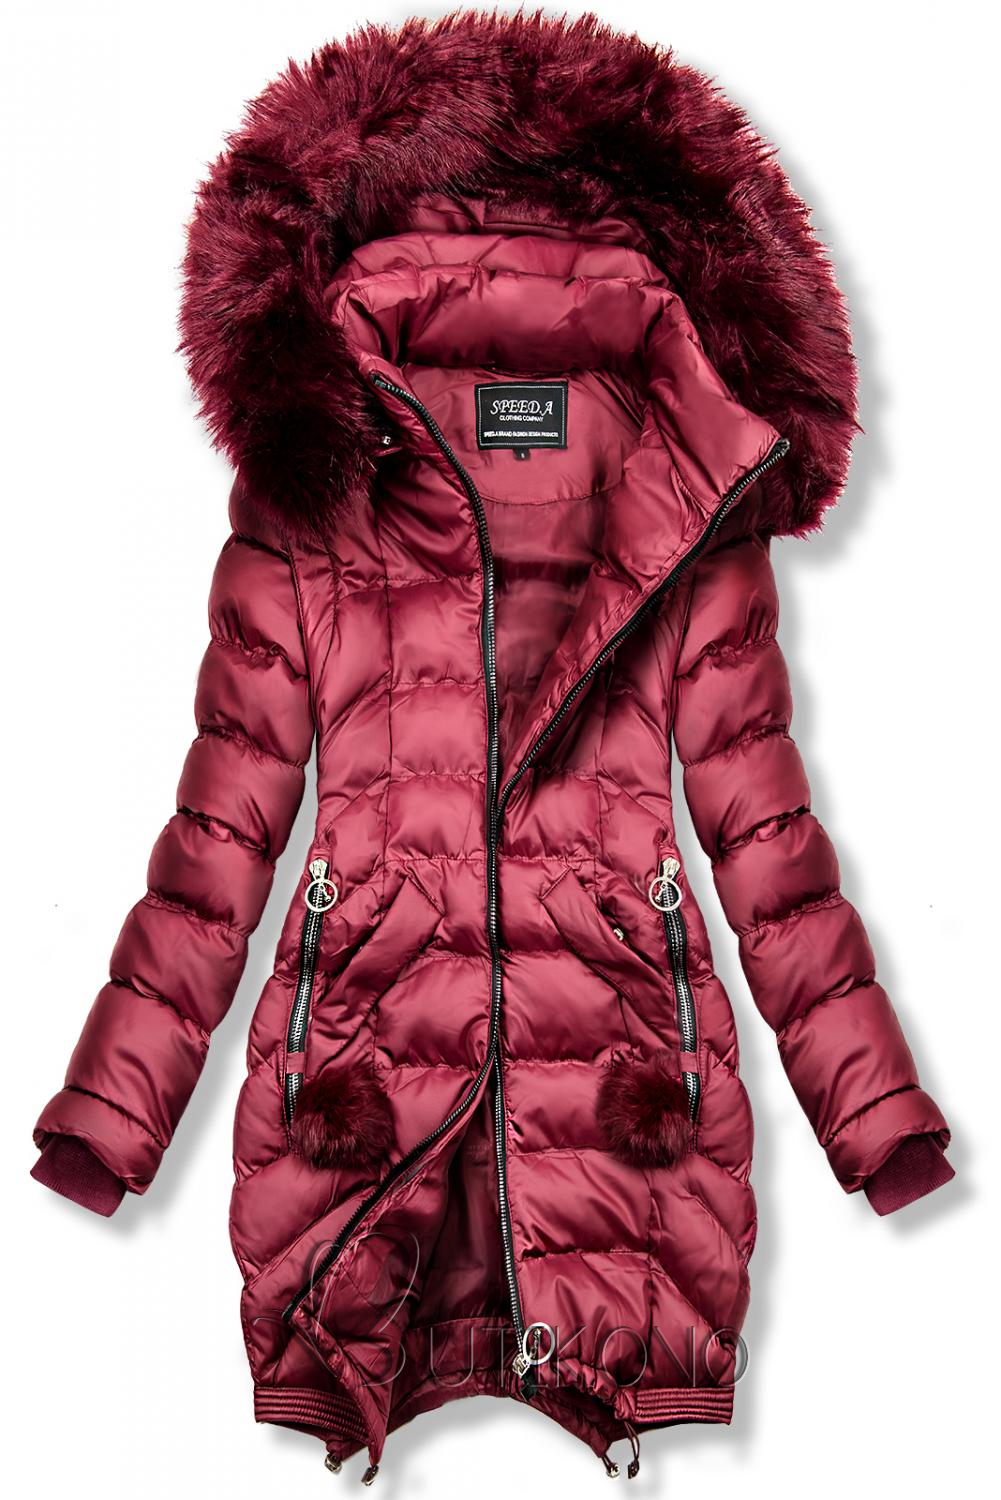 Tmavočervená predĺžená zimná bunda/vesta